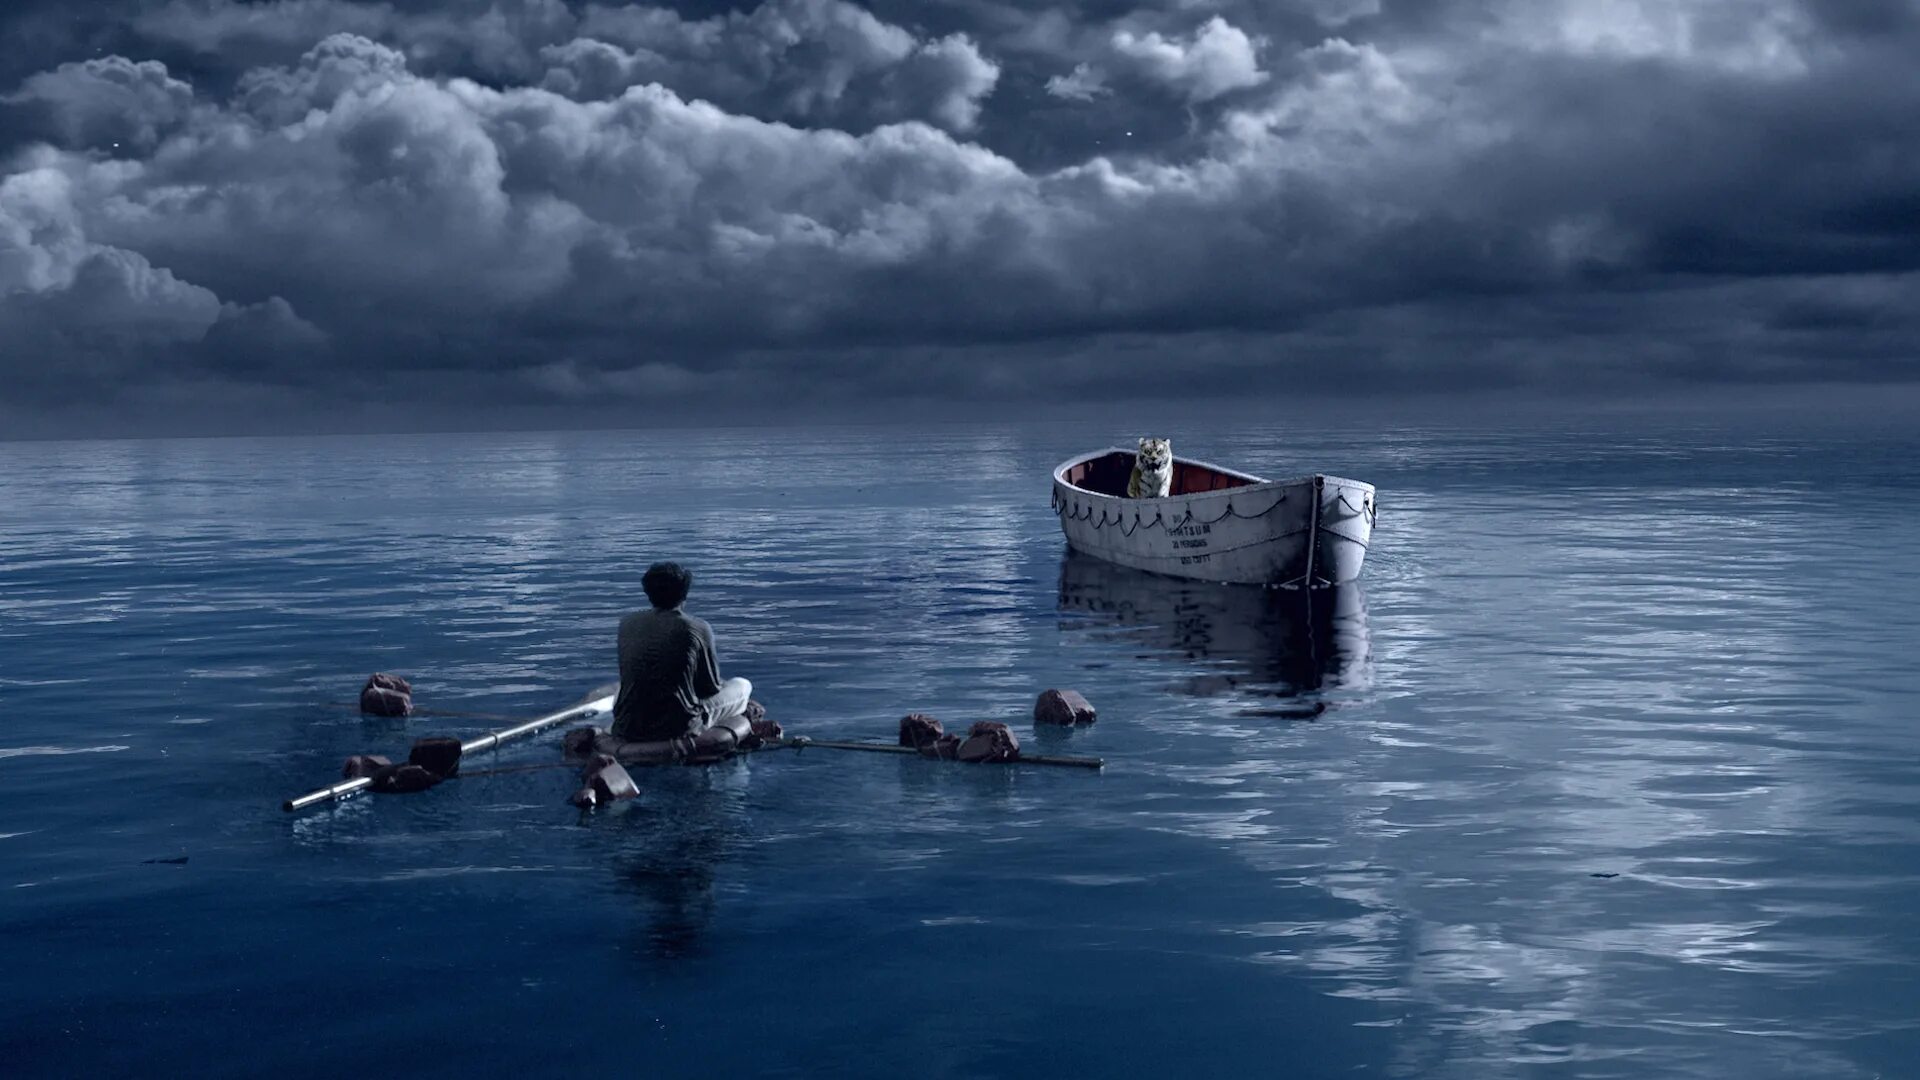 Видео жизни а 4. Человек в лодке. Лодка в море.